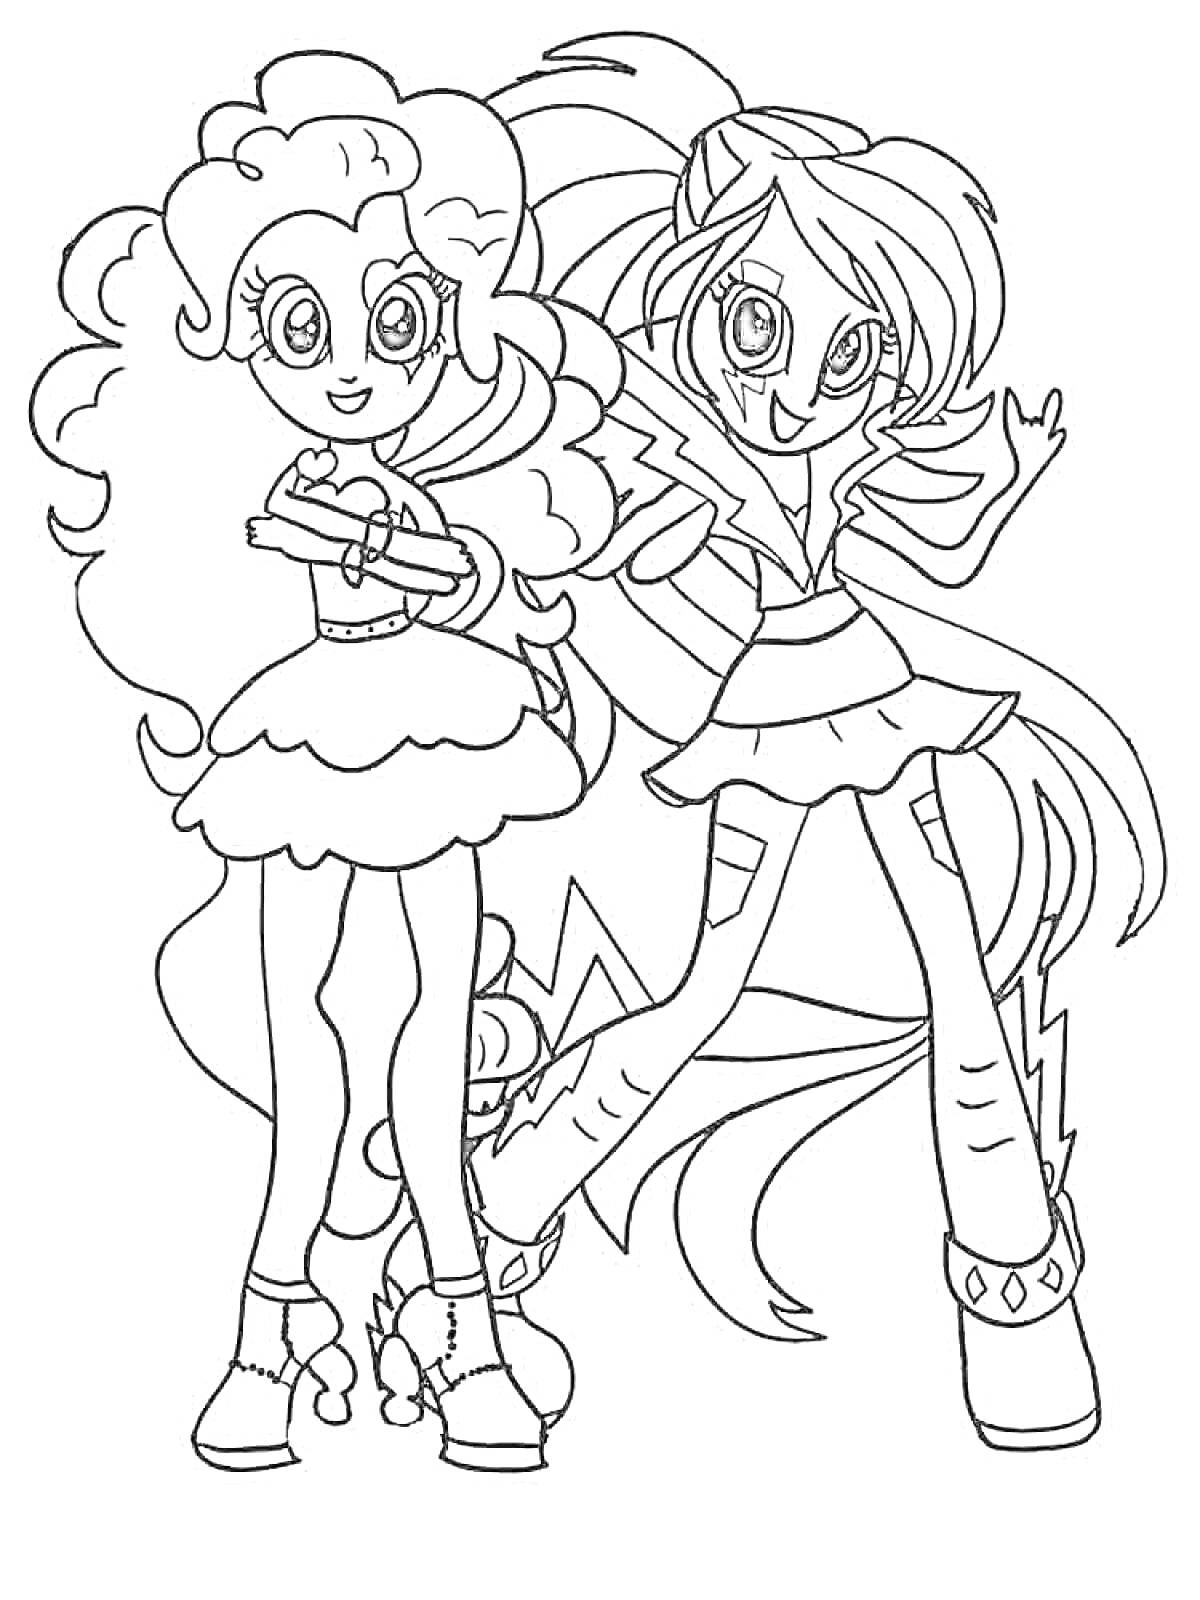 Раскраска Две девушки Эквестрия Герлз, одна с кудрявыми волосами и платьем, другая с длинными волосами и юбкой, обе стоят в полный рост